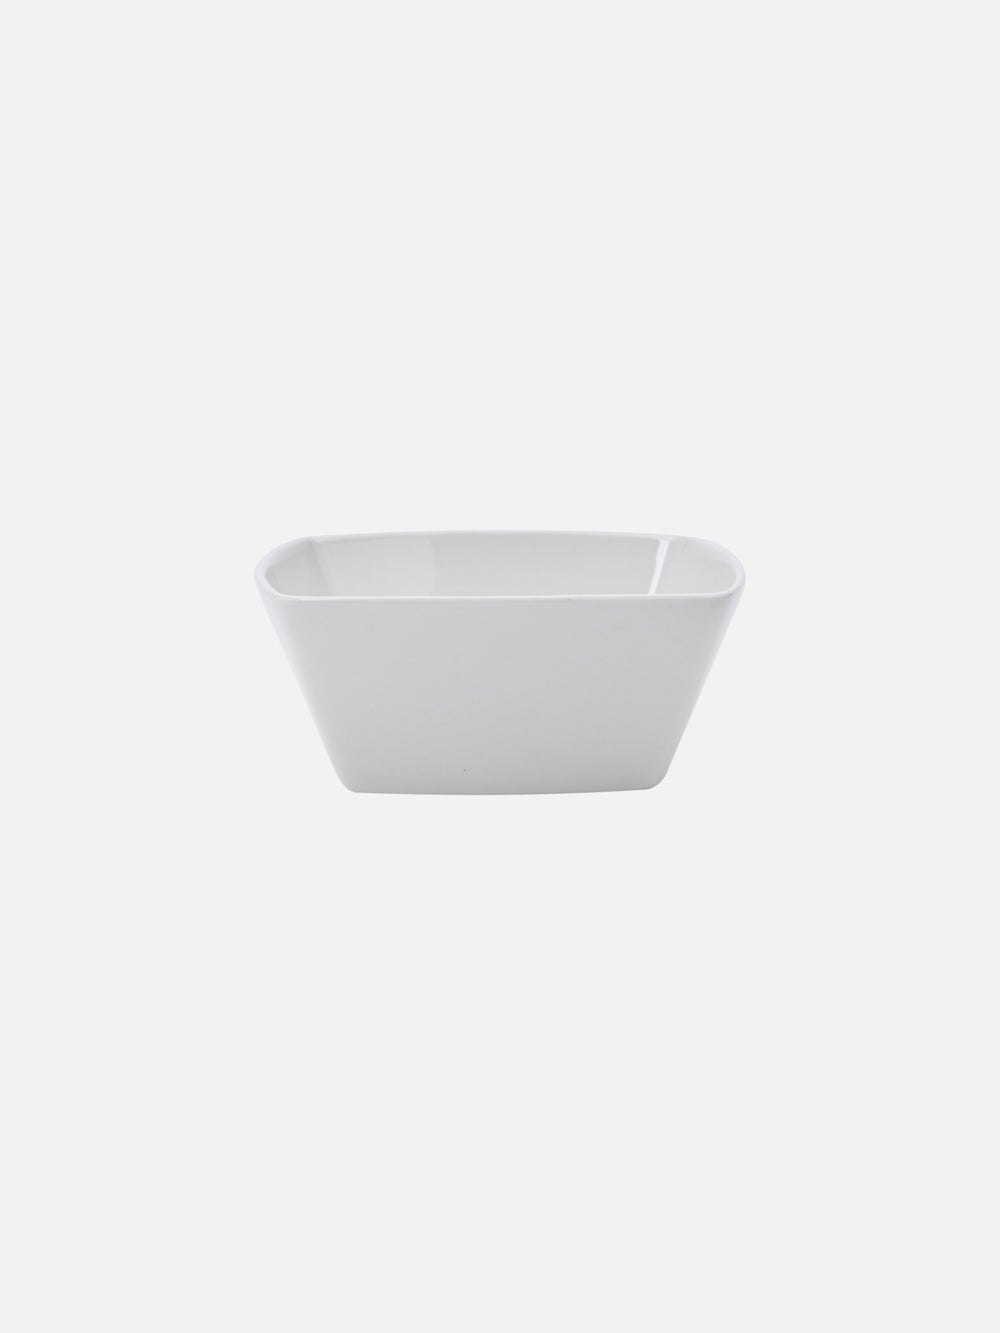 Square bowl